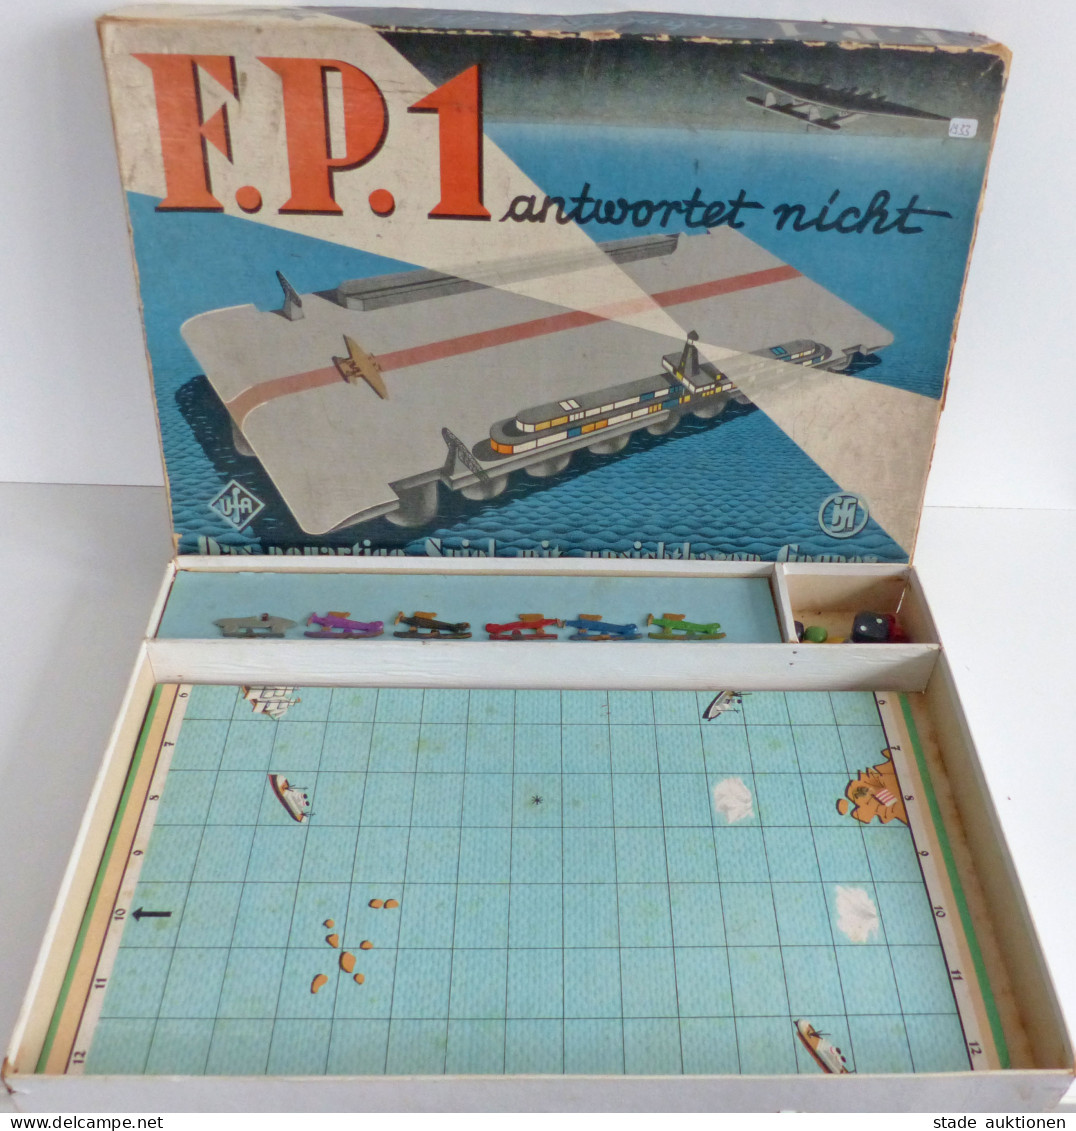 Spielzeug F.P.1 Antwortet Nicht Das Neuartige Spiel Mit Unsichtbaren Gegnern Von 1933, Originalverpackung 1 Flugzeug Feh - Giochi, Giocattoli